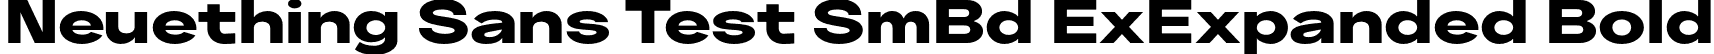 Neuething Sans Test SmBd ExExpanded Bold font | NeuethingVariableTest-ExtraBoldExtraExpanded.otf